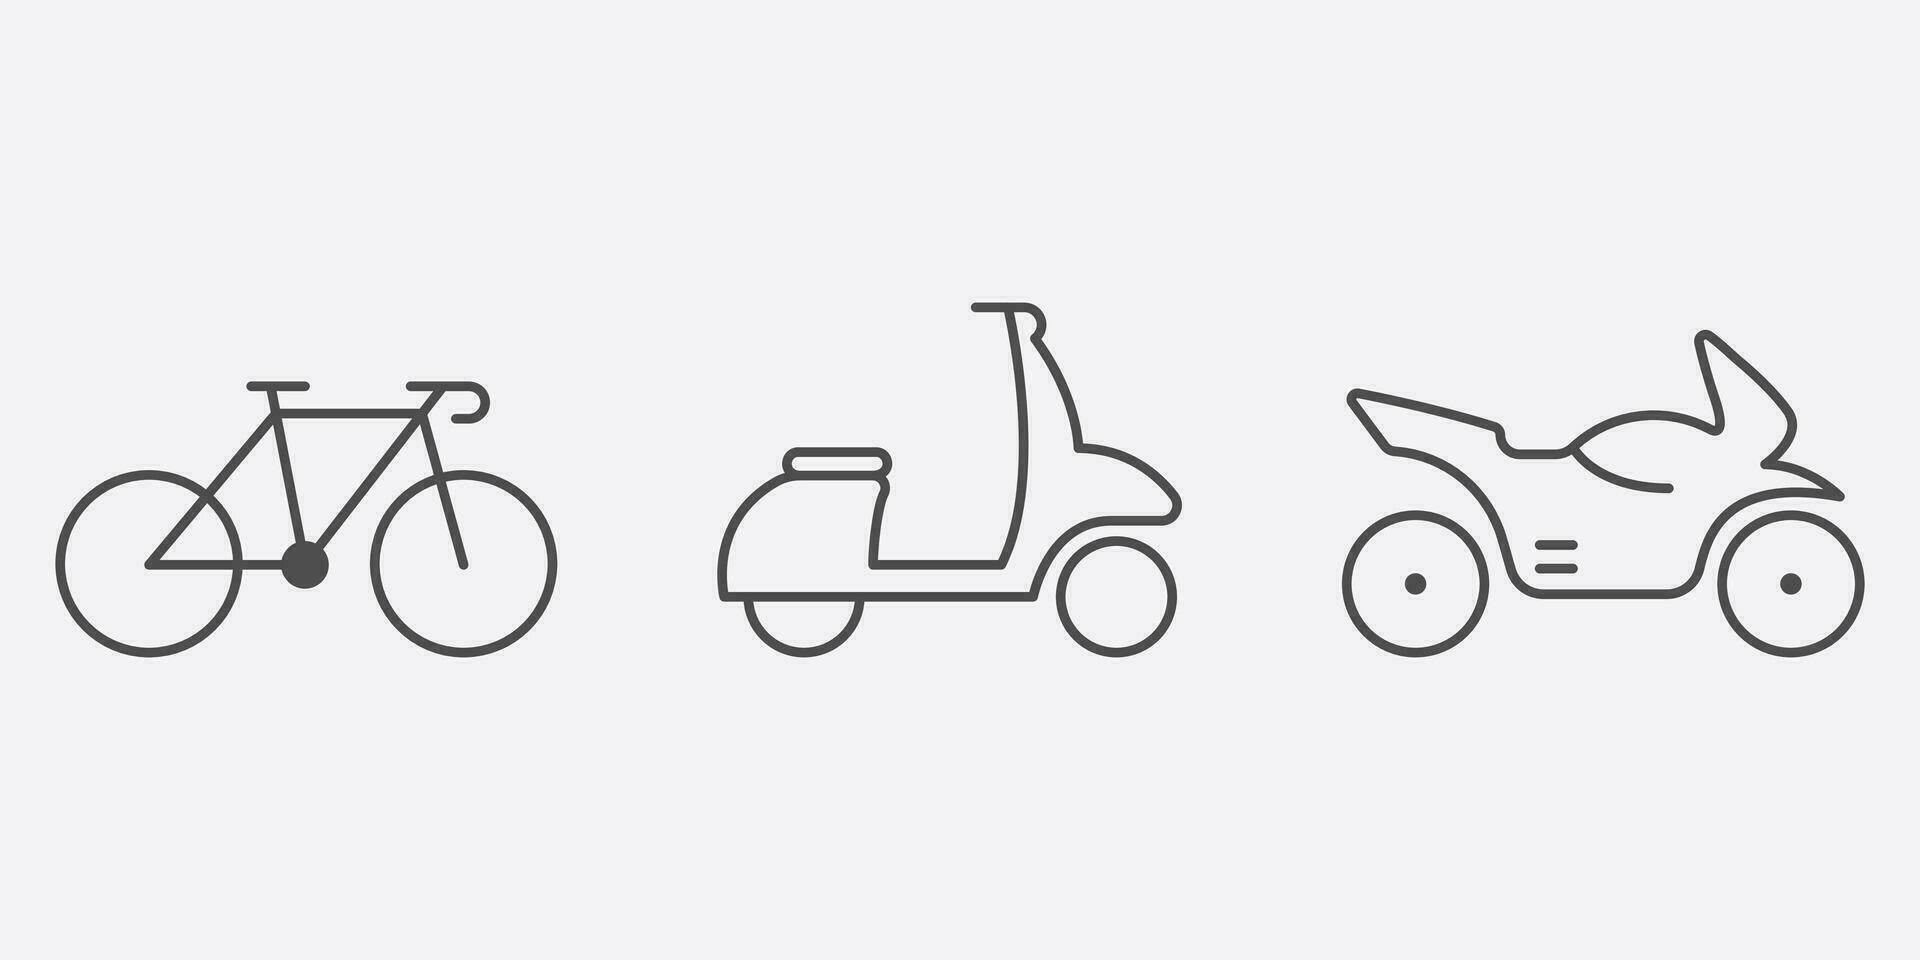 Entrega serviço transporte linha ícone definir. moto, bicicleta, ciclomotor, lambreta linear pictograma. estrada esboço placa. motor transporte símbolo coleção. editável AVC. isolado vetor ilustração.